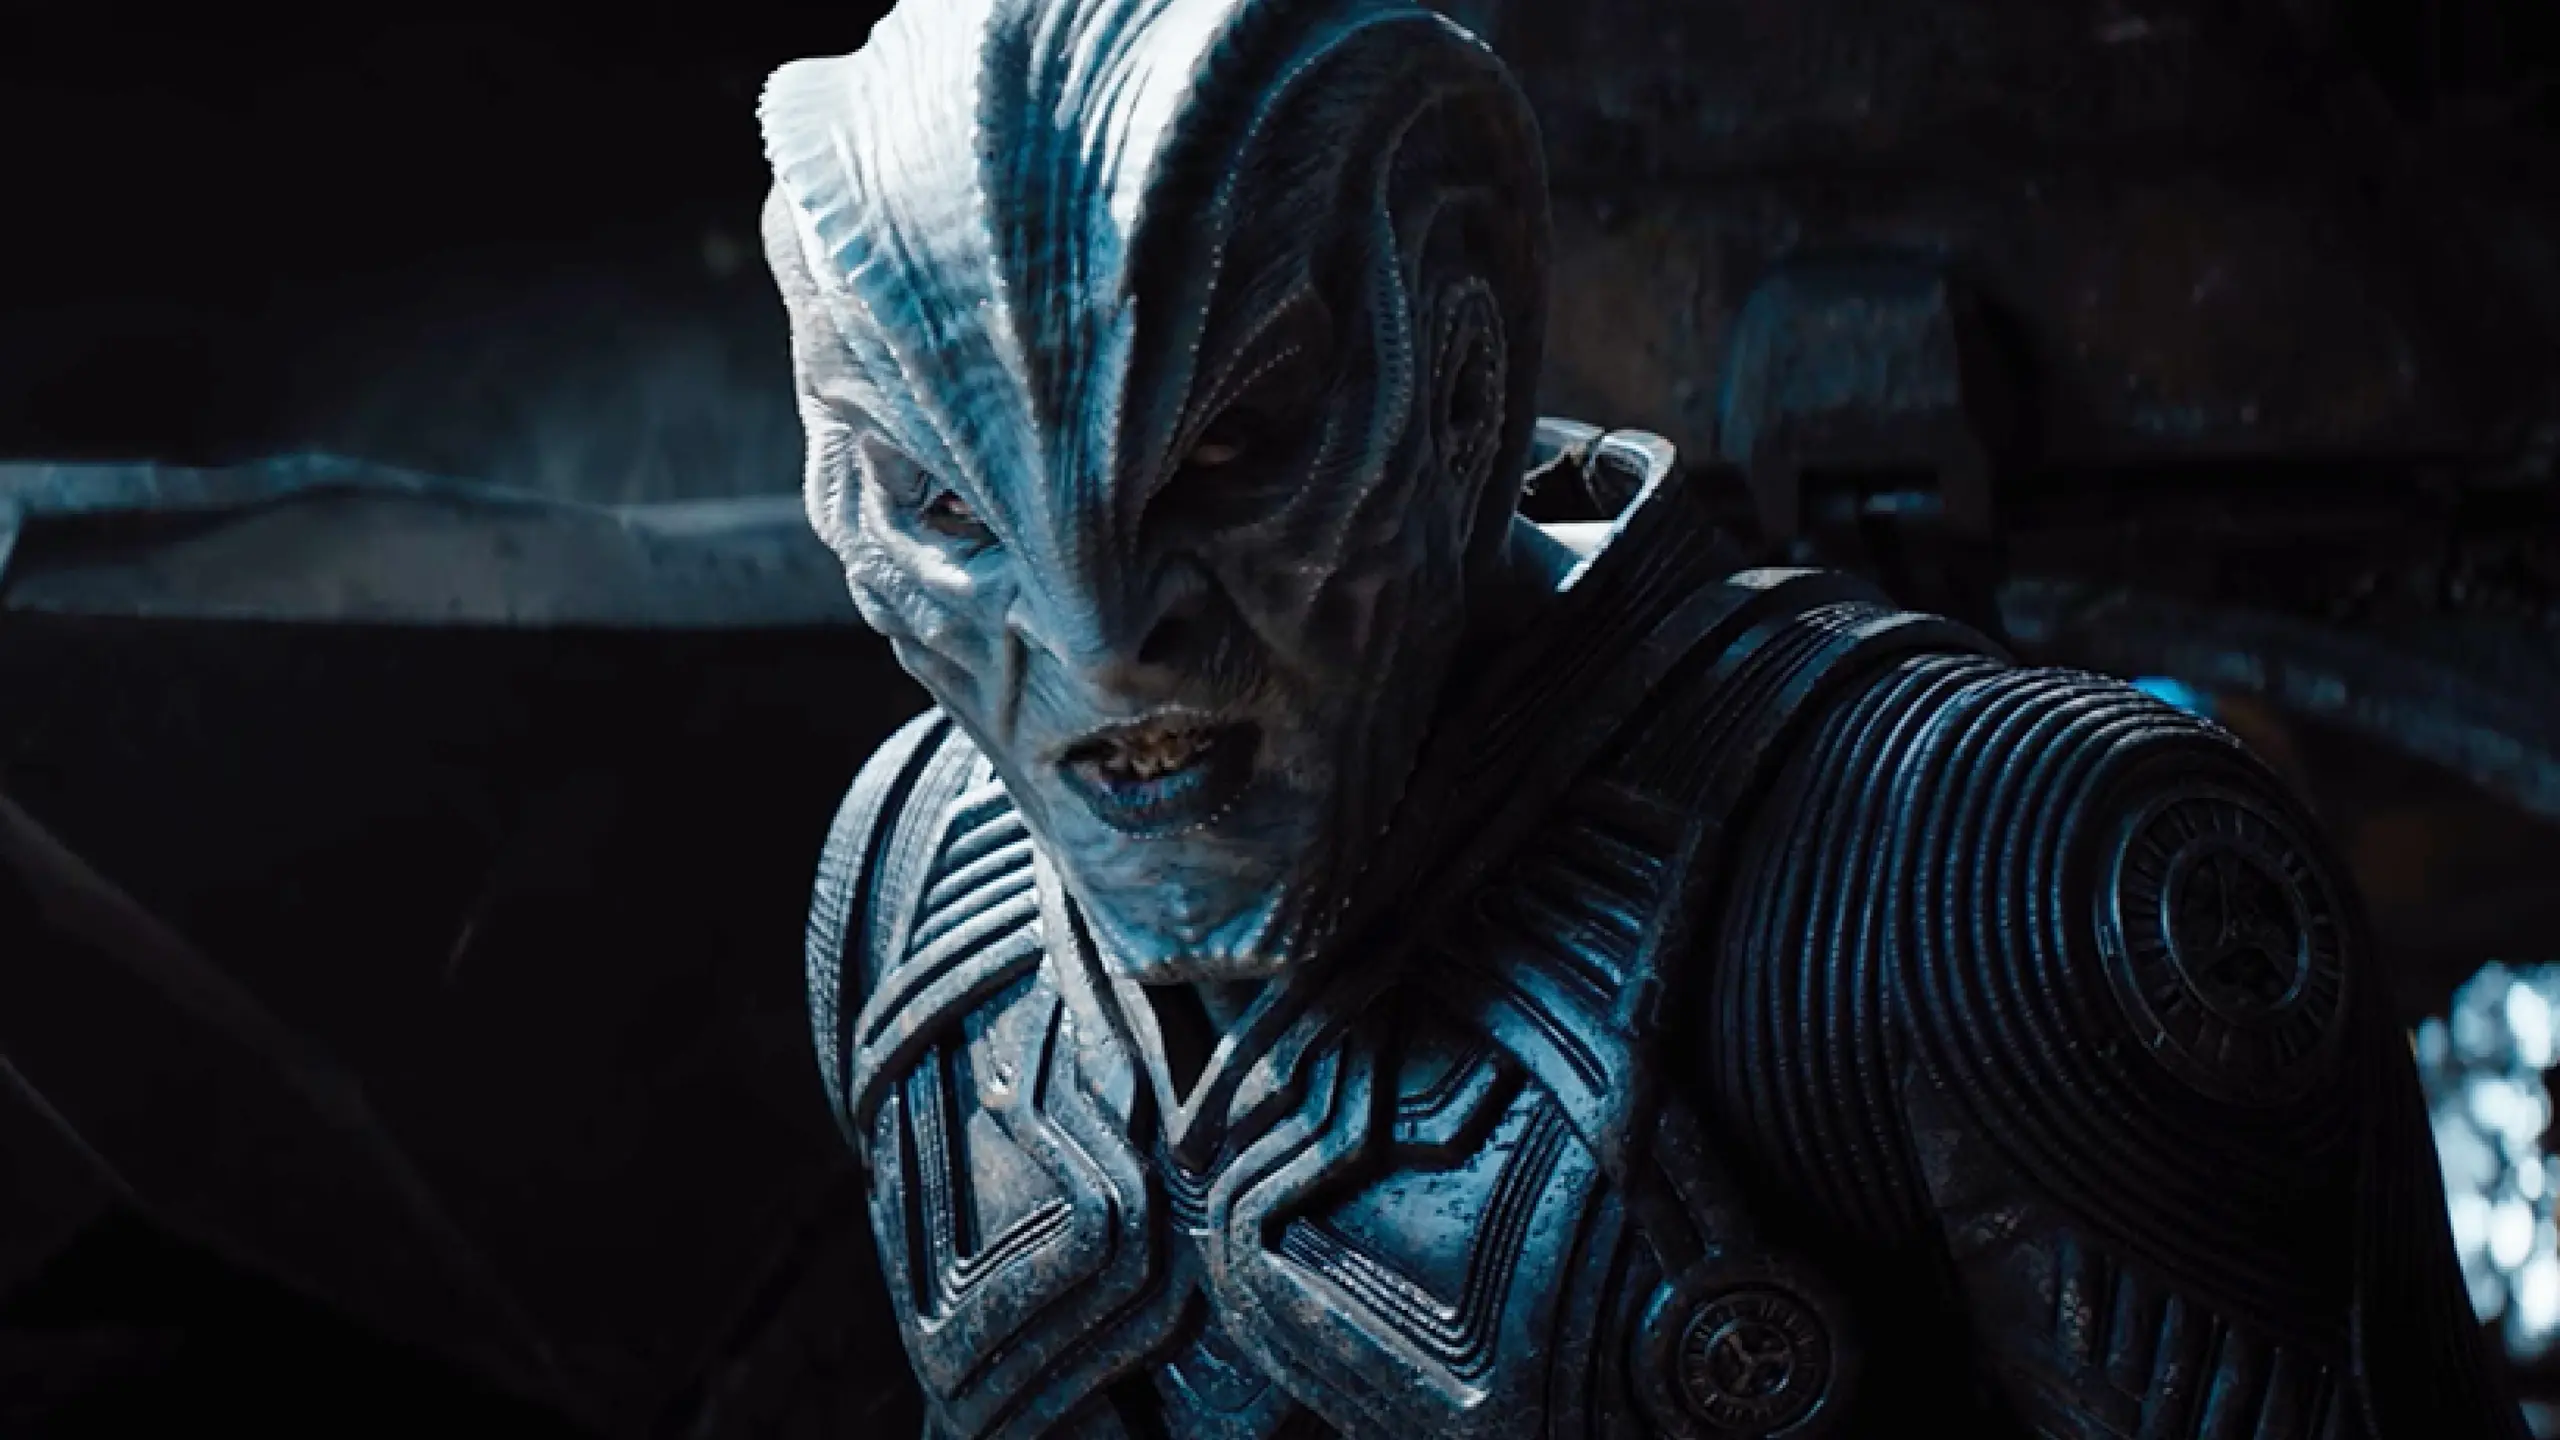 Idris Elba ließ sich für den Film „Star Trek Beyond“ 2016 zum schurkischen Alien Krall schminken. Hätten Sie ihn wiedererkannt?